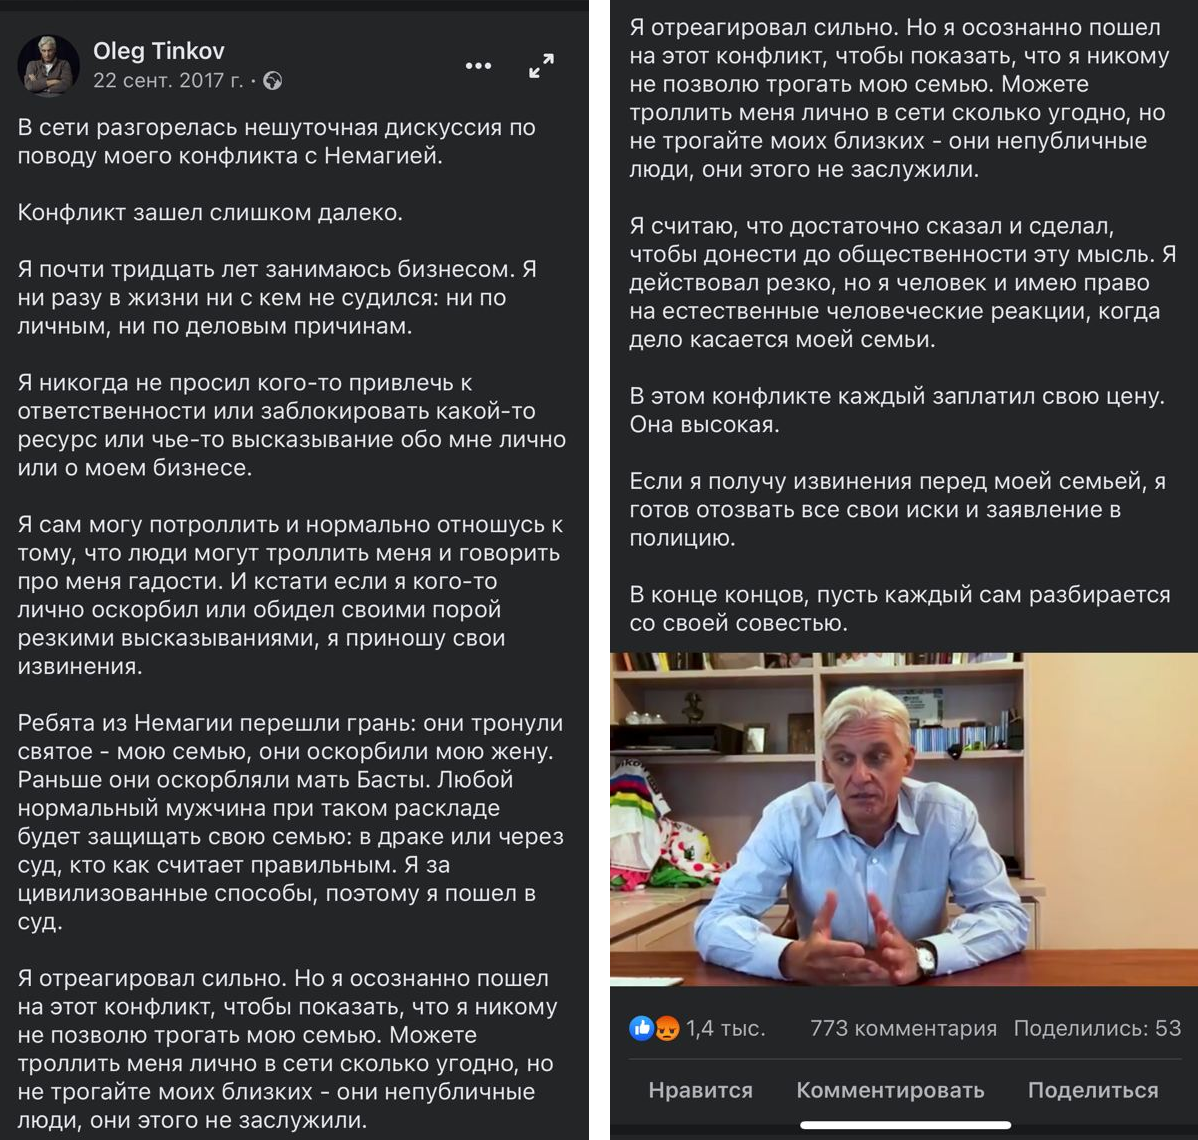 В итоге Олег Тиньков записал видео с извинениями и требованиями к блогерам из «Немагии»